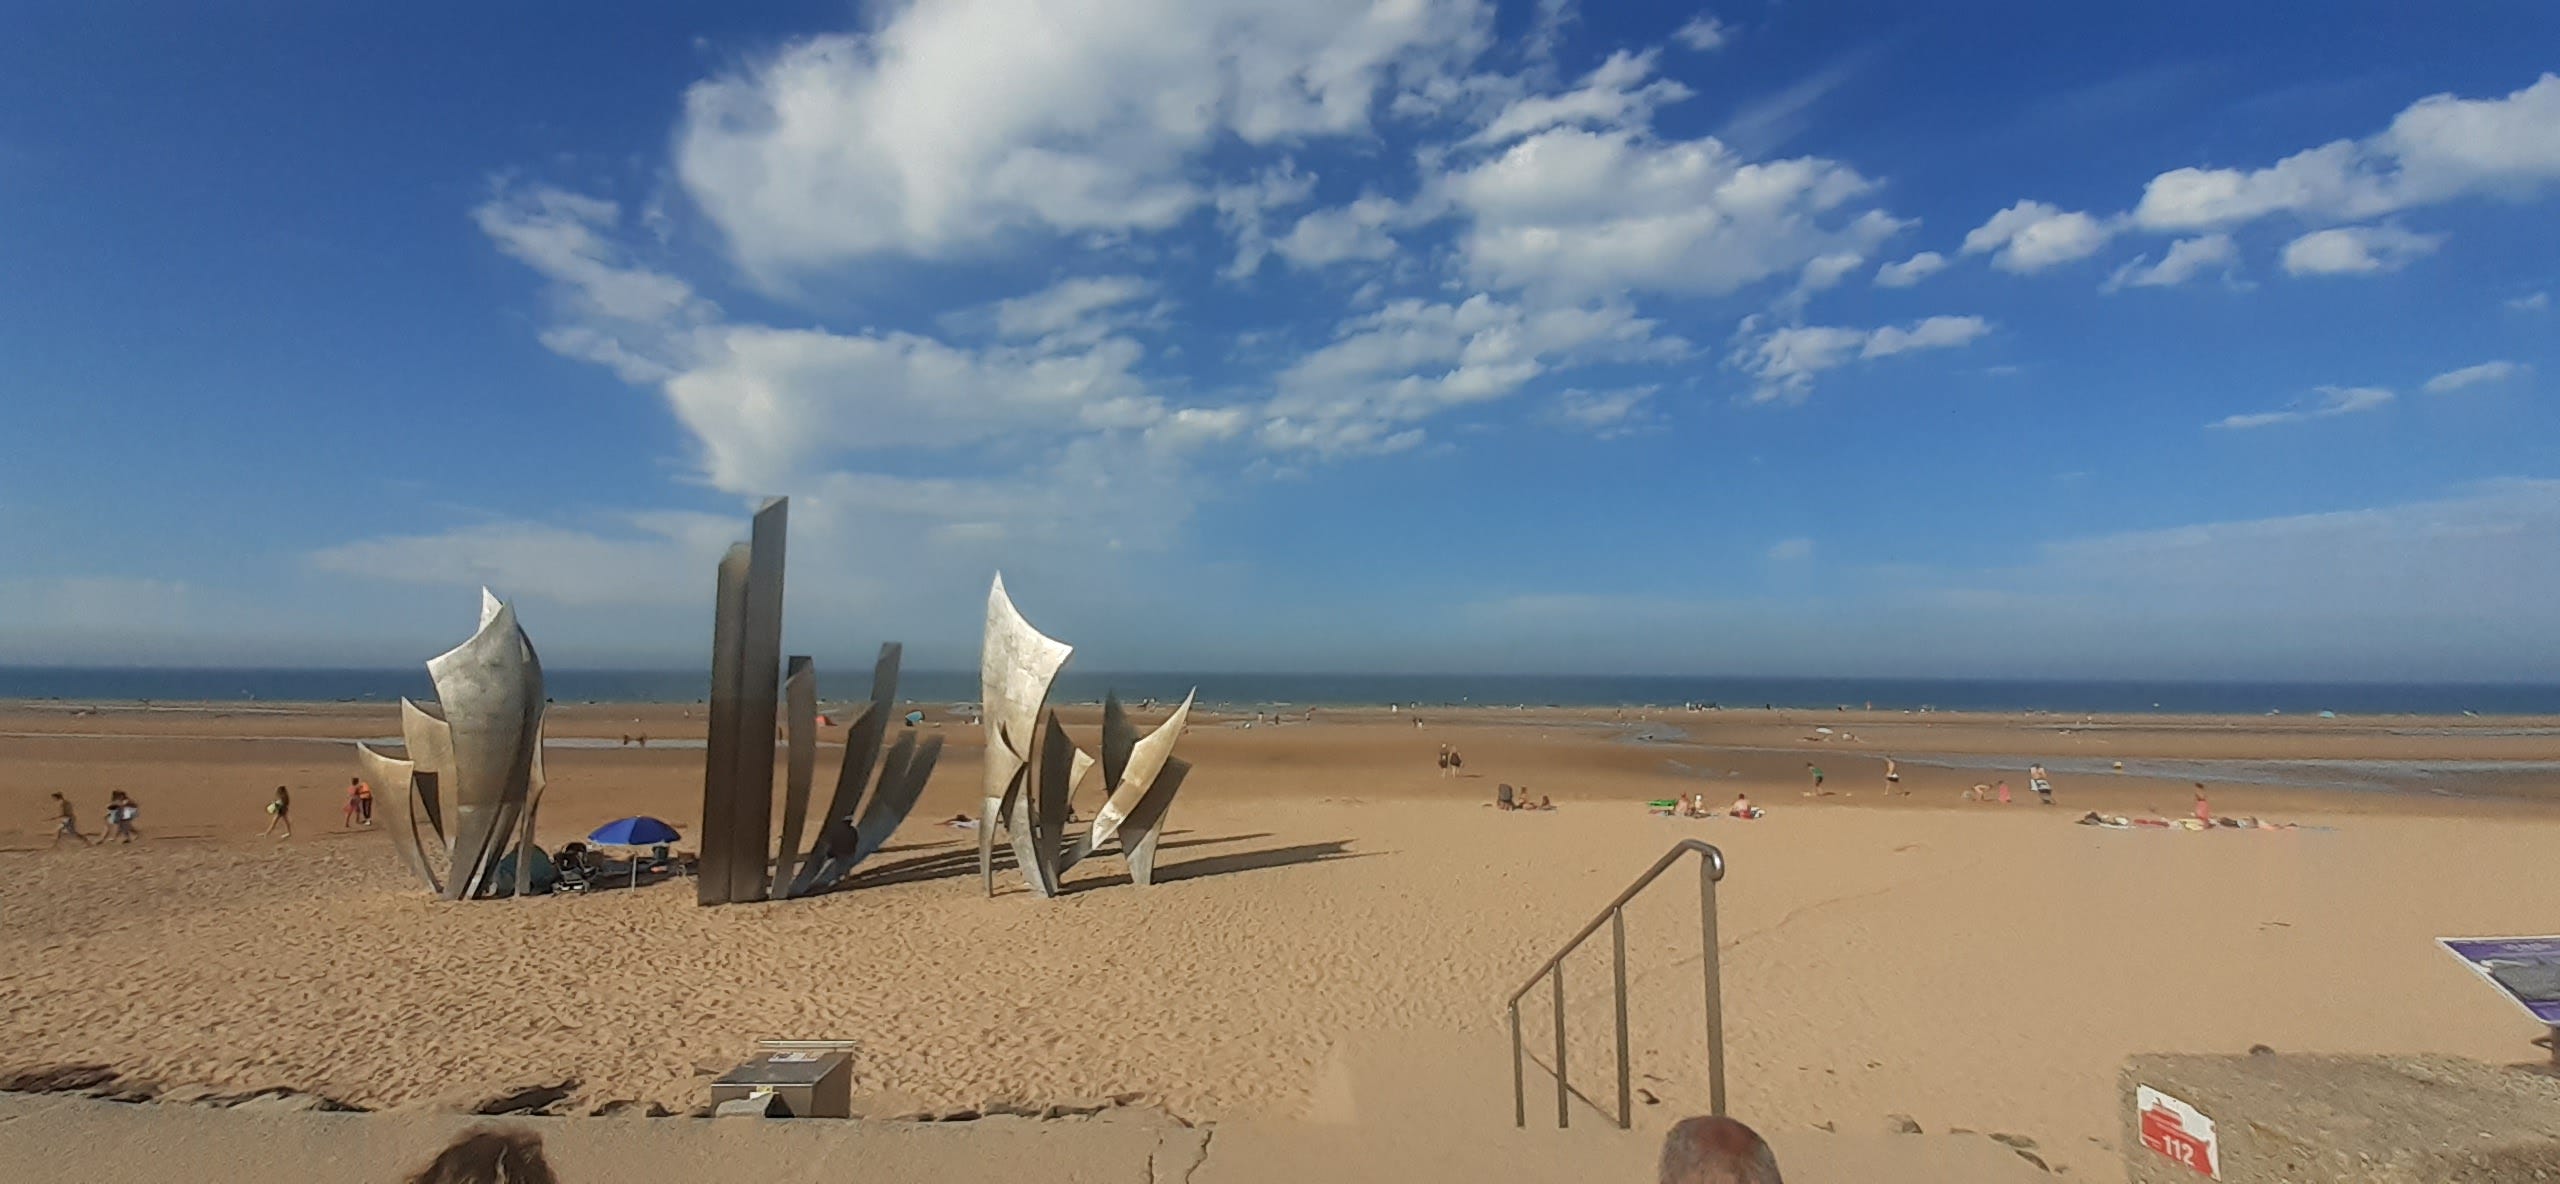 La lunghissima spiaggia di Omaha Beach in un pomeriggio di agosto: il cielo è azzurro e attraversato da poche nuvole, il mare si scorge in lontananza. Sulla spiaggia diverse persone prendono il sole. Sulla sinistra, tre alte sculture astratte in metallo ricordano i caduti del D-Day.